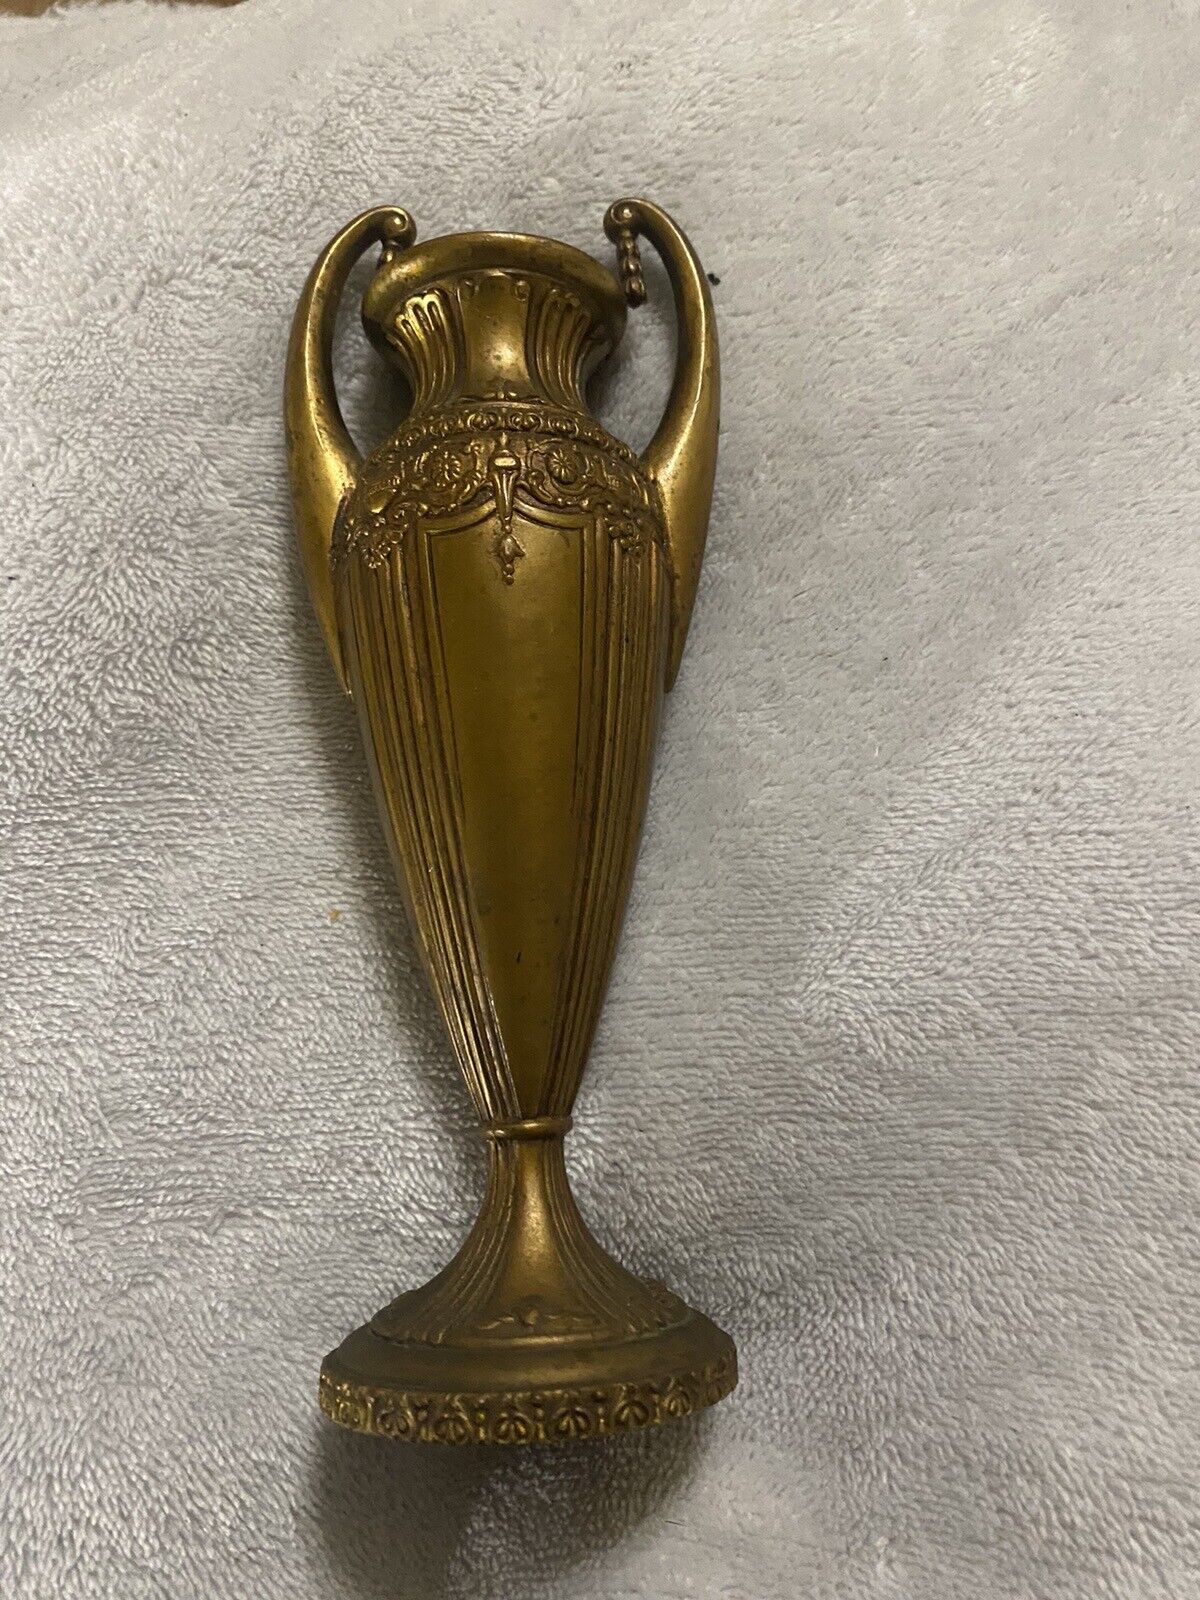 1938 JB Jennings Brothers Loving Cup Vase Bronze Trophy Urn Vintage Antique